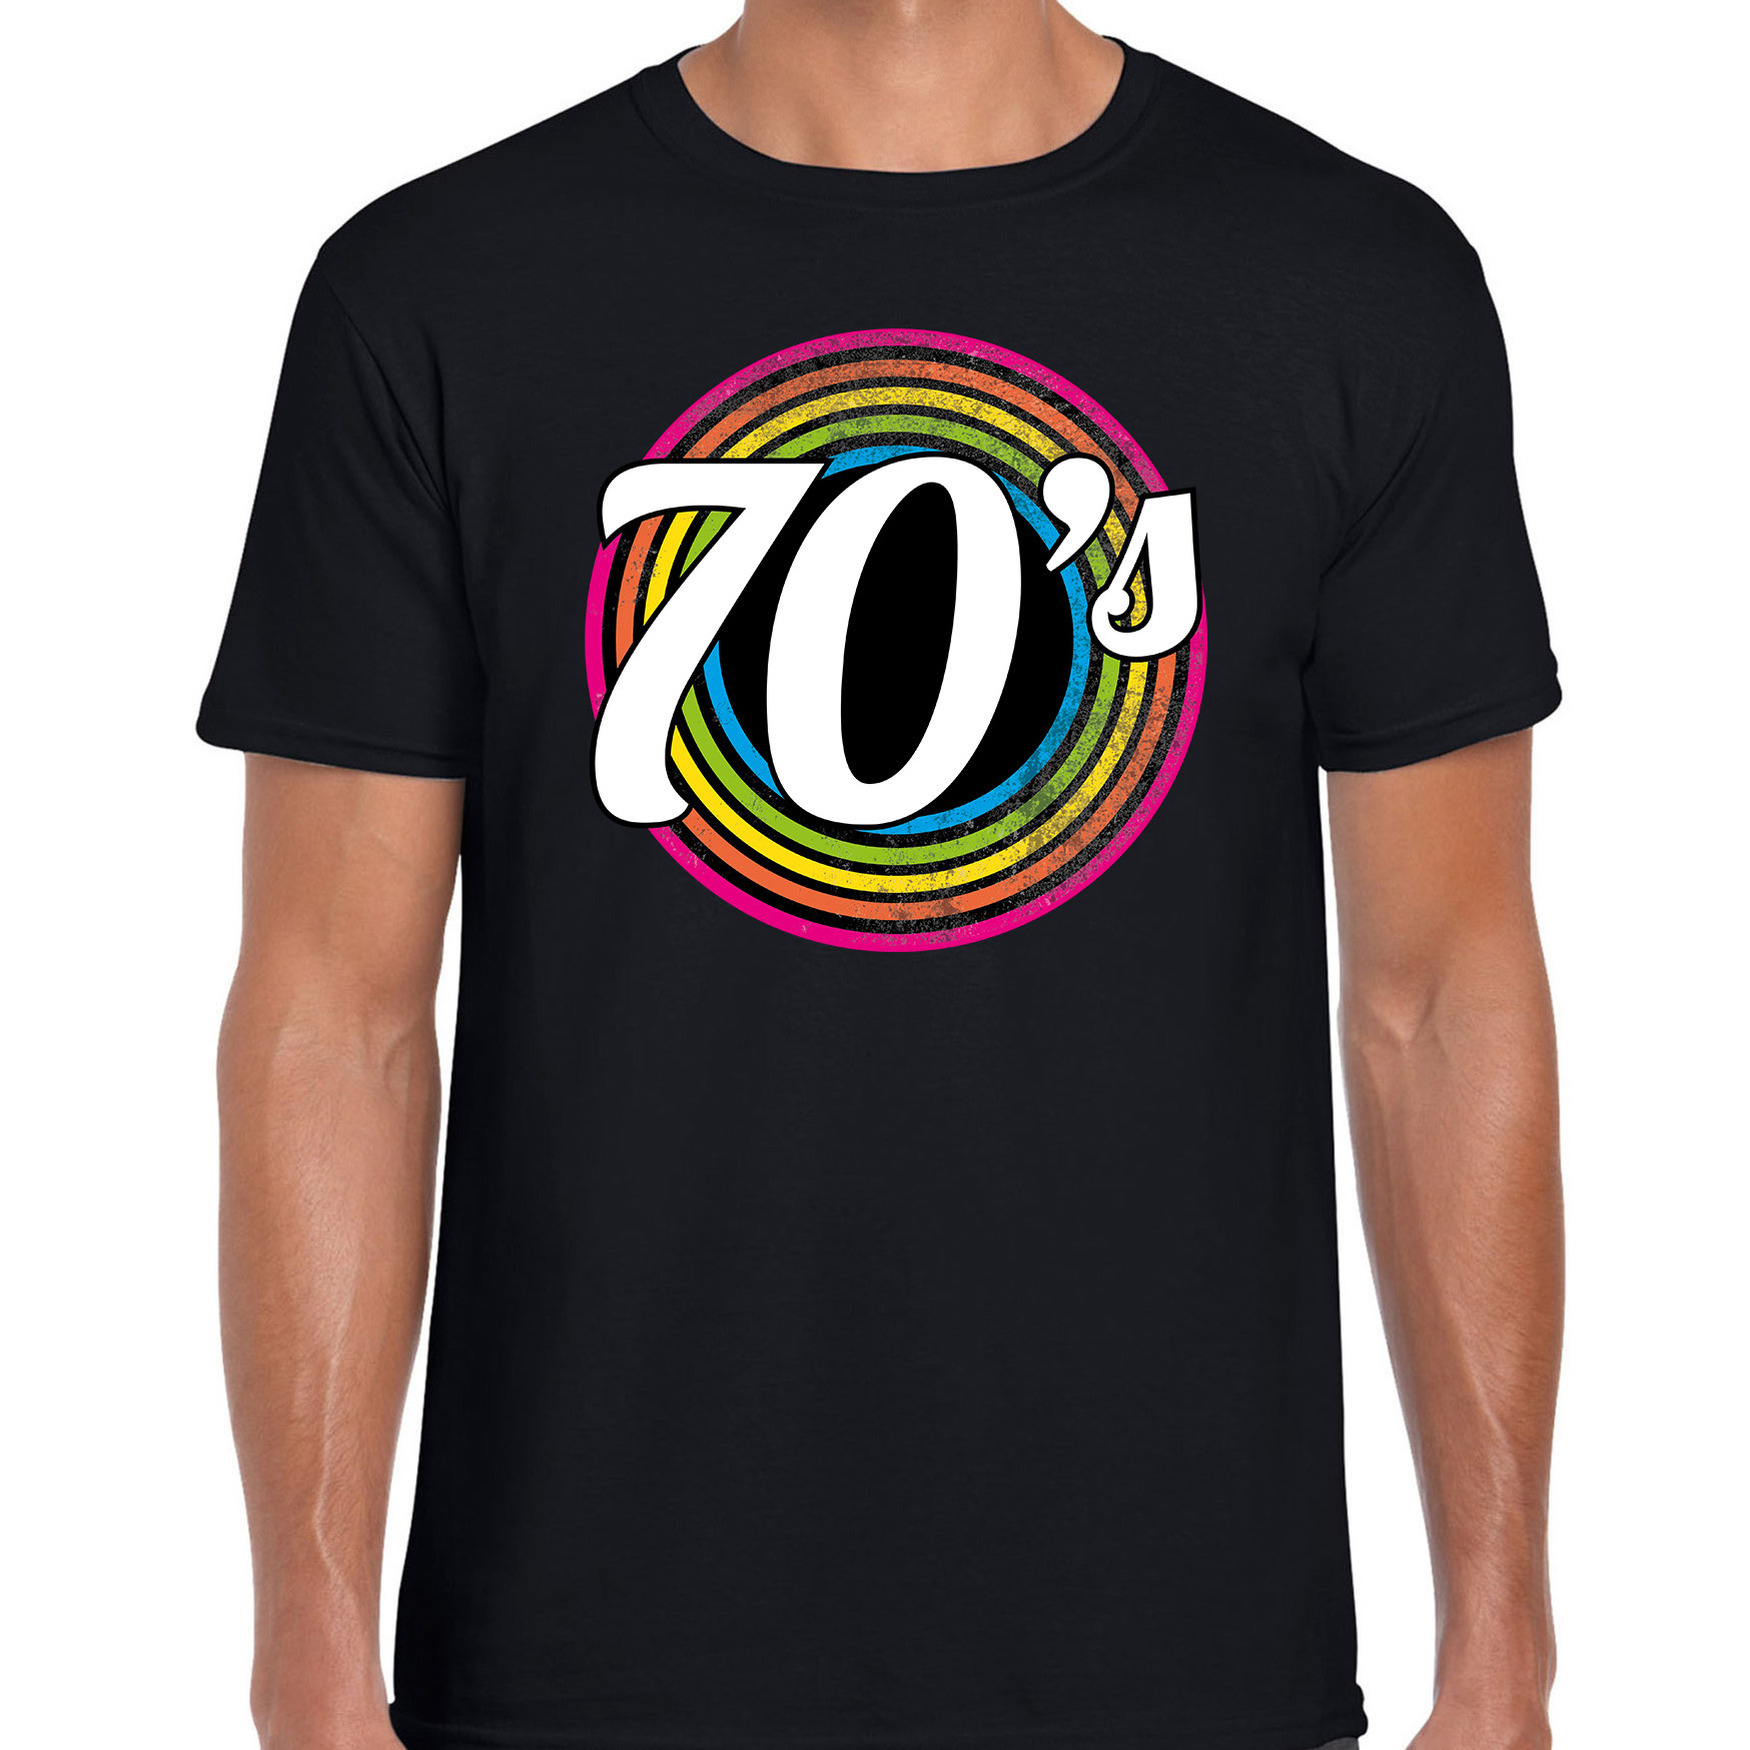 70s / seventies verkleed t-shirt zwart voor heren - 70s, 80s party verkleed outfit